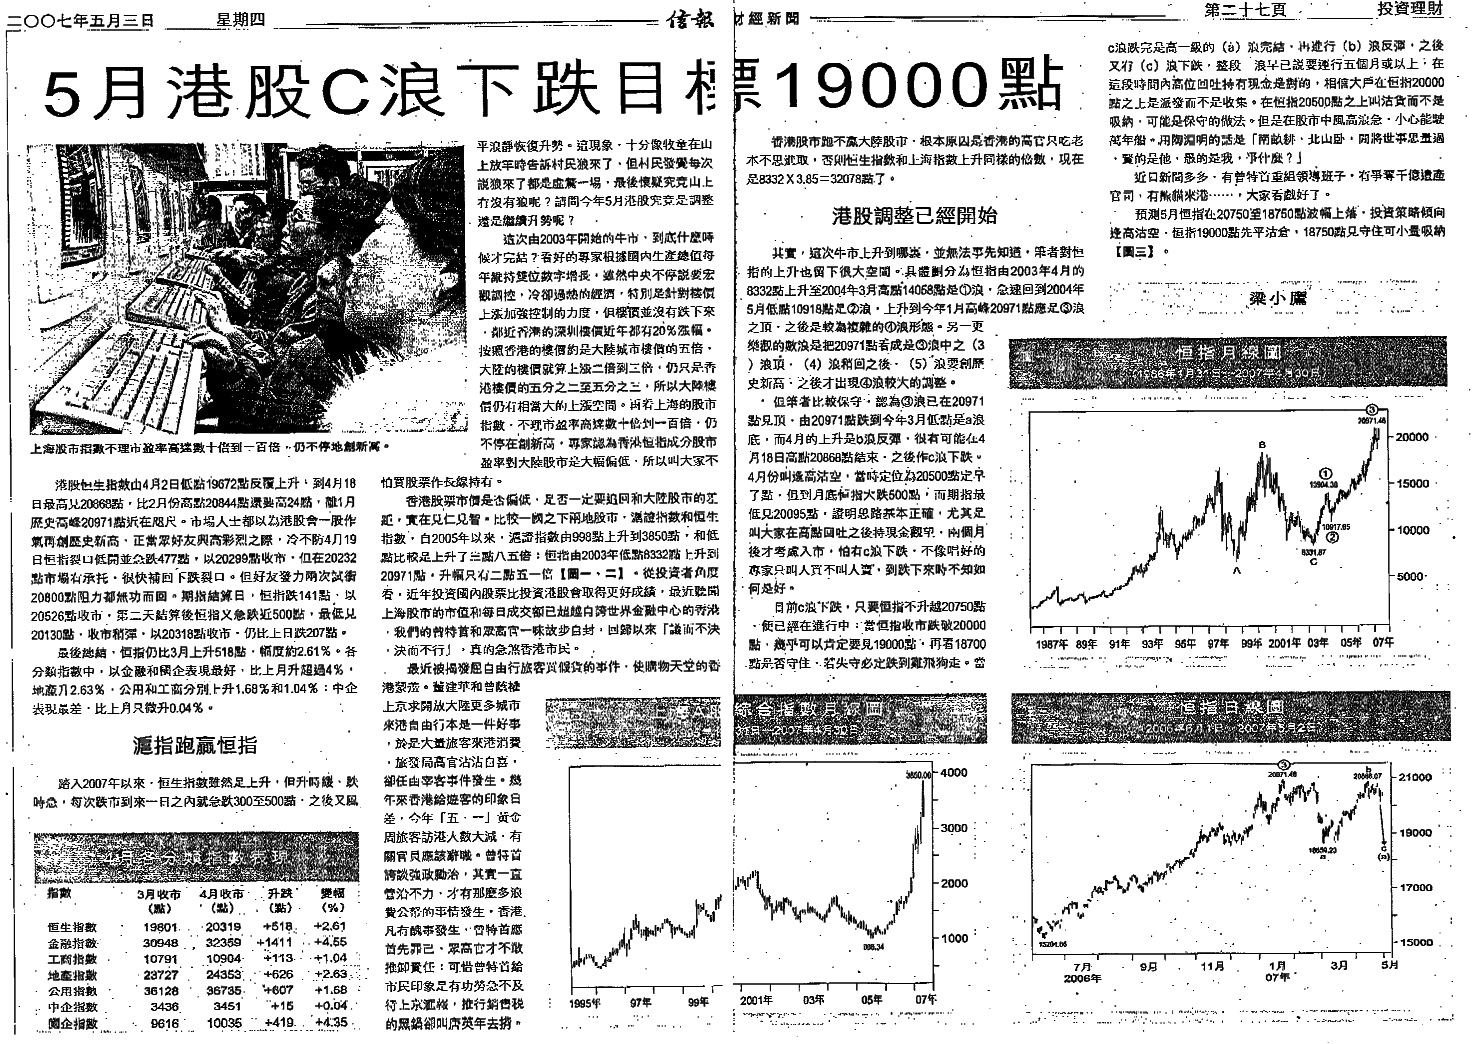 梁小鷹信報文章 - 2007年5月港股 (C) 浪下跌目標 19000點.gif